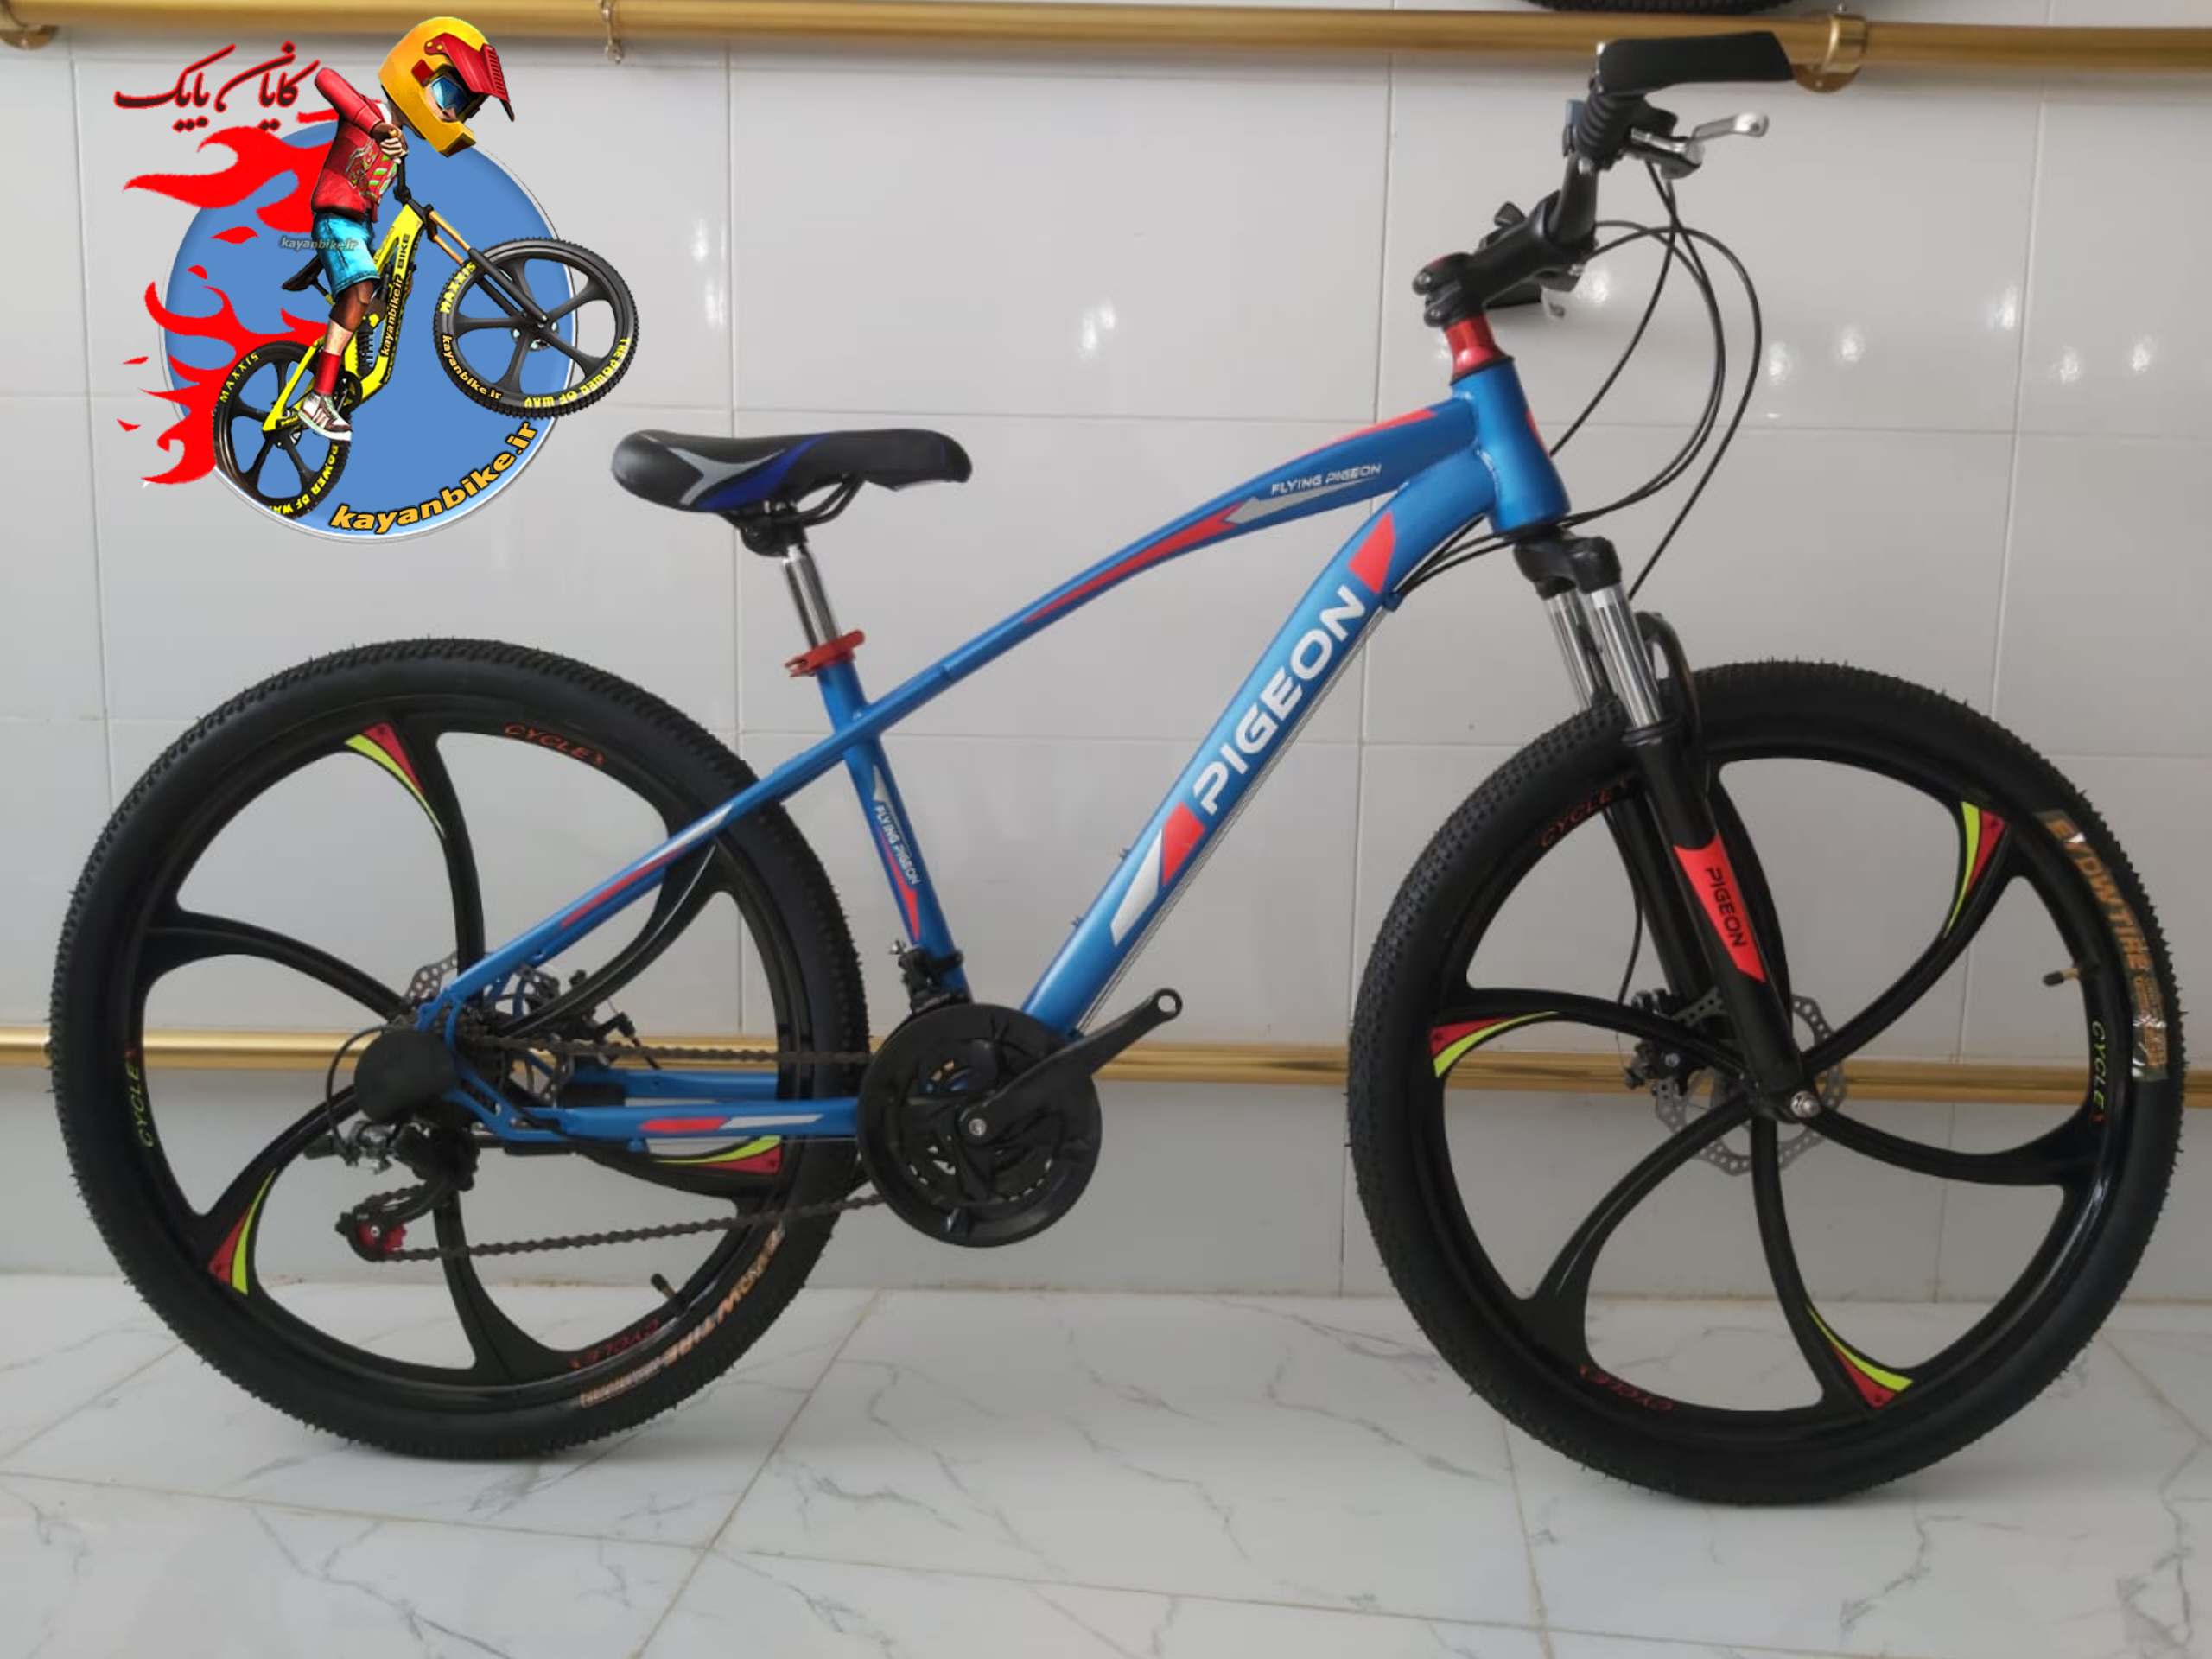 دوچرخه اسپورت پیژون شهری و کوهستان سایز 26 در کایان بایک